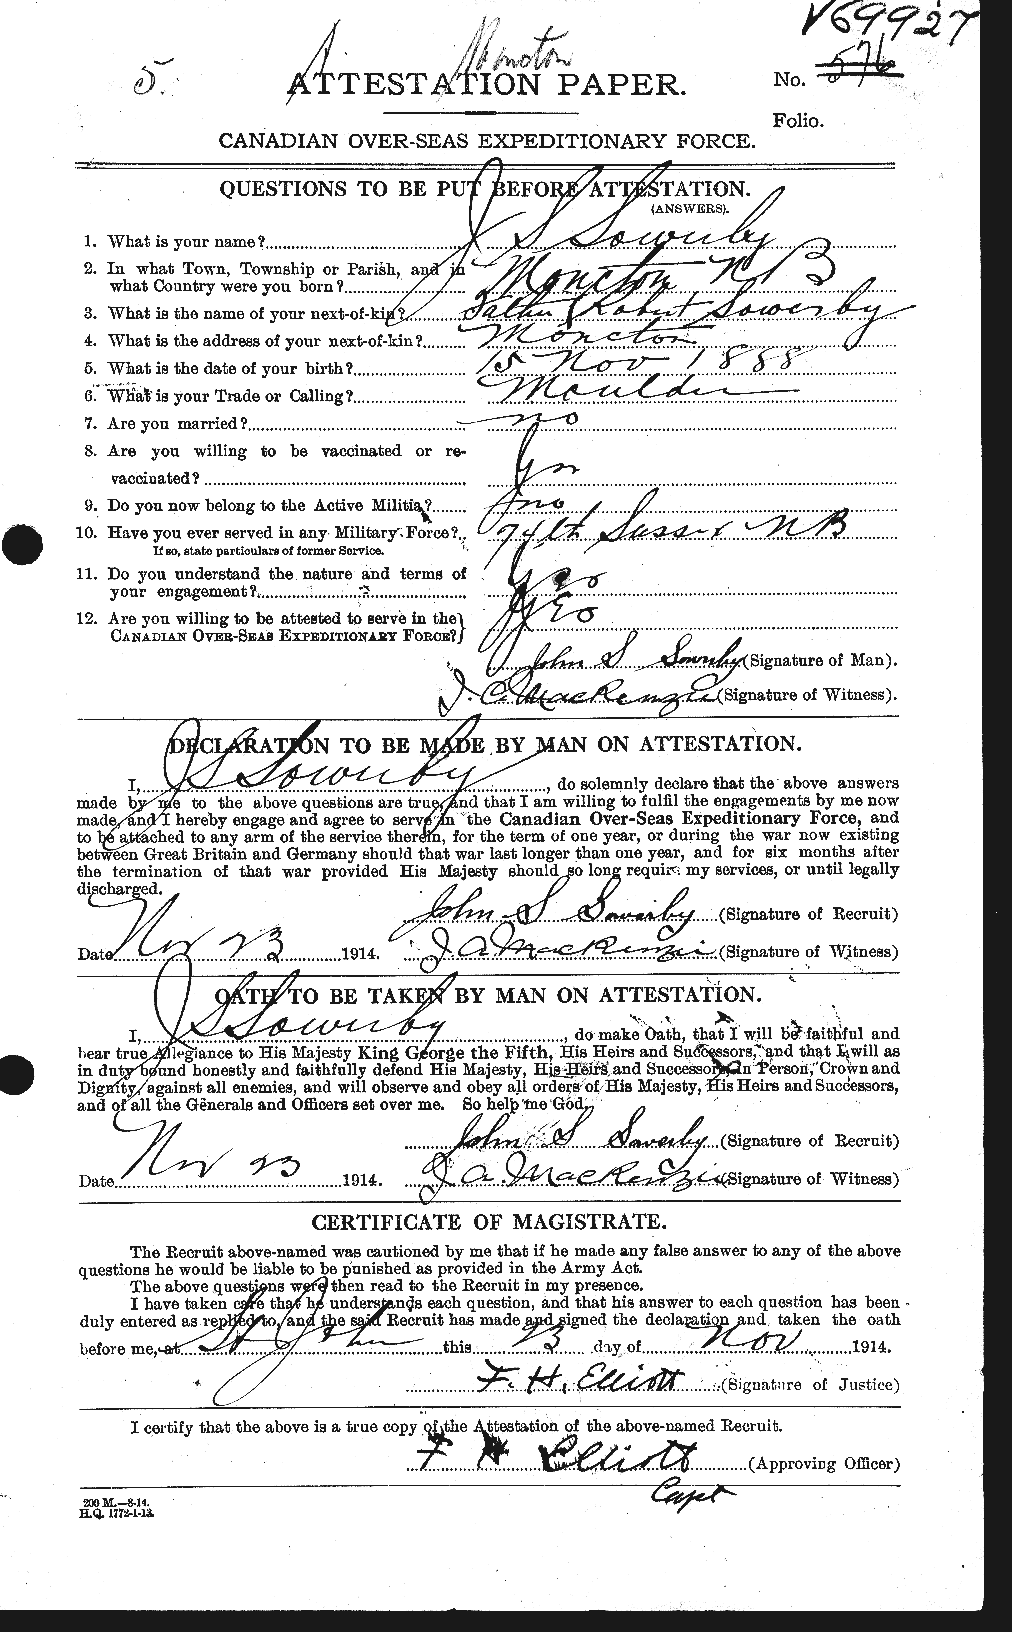 Dossiers du Personnel de la Première Guerre mondiale - CEC 624397a